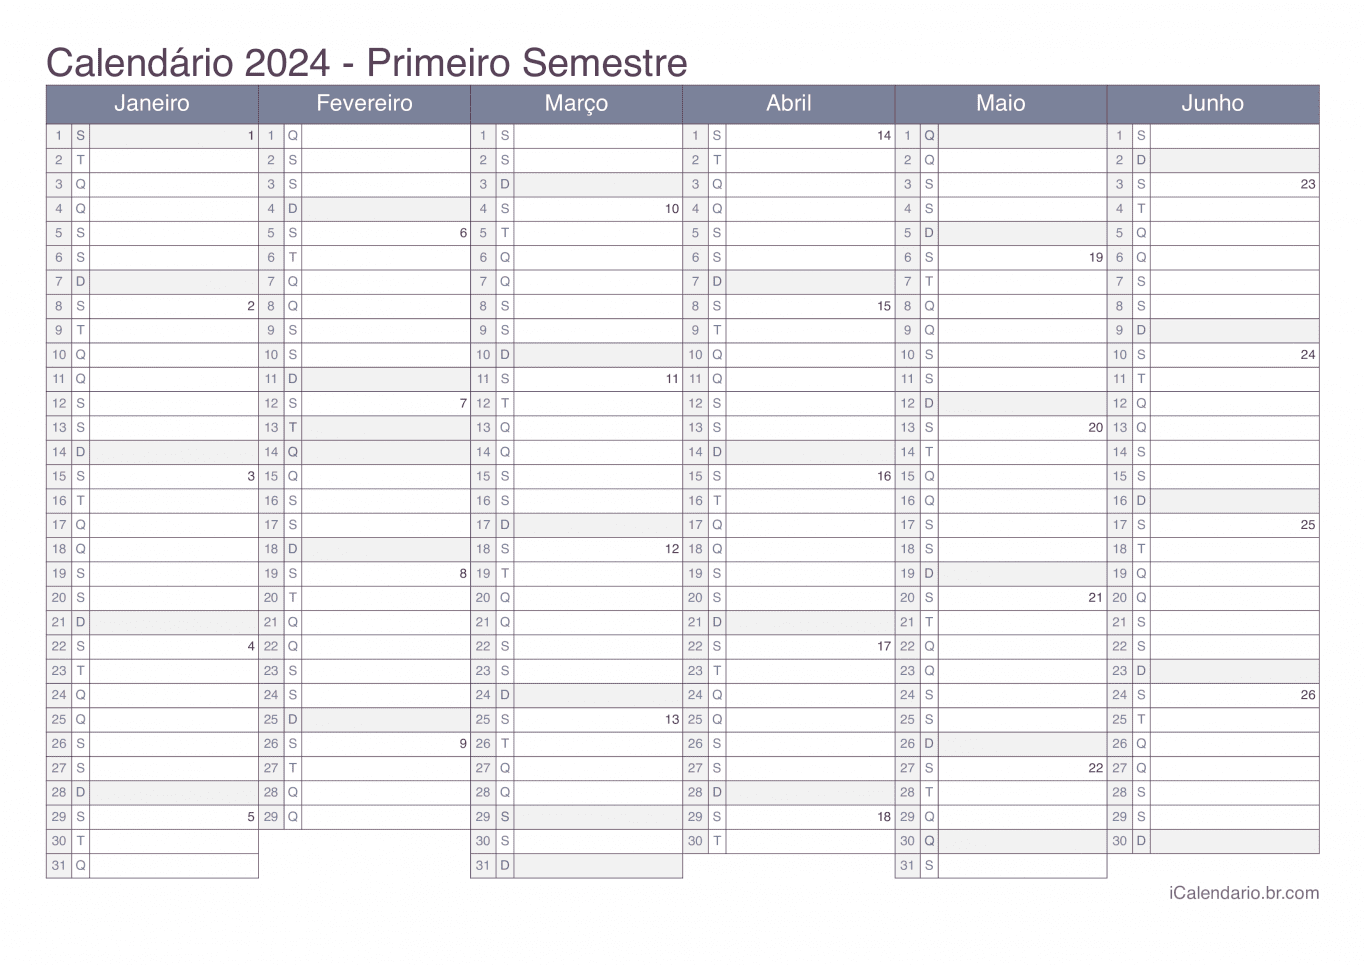 Calendário por semestre com números da semana 2024 - Office